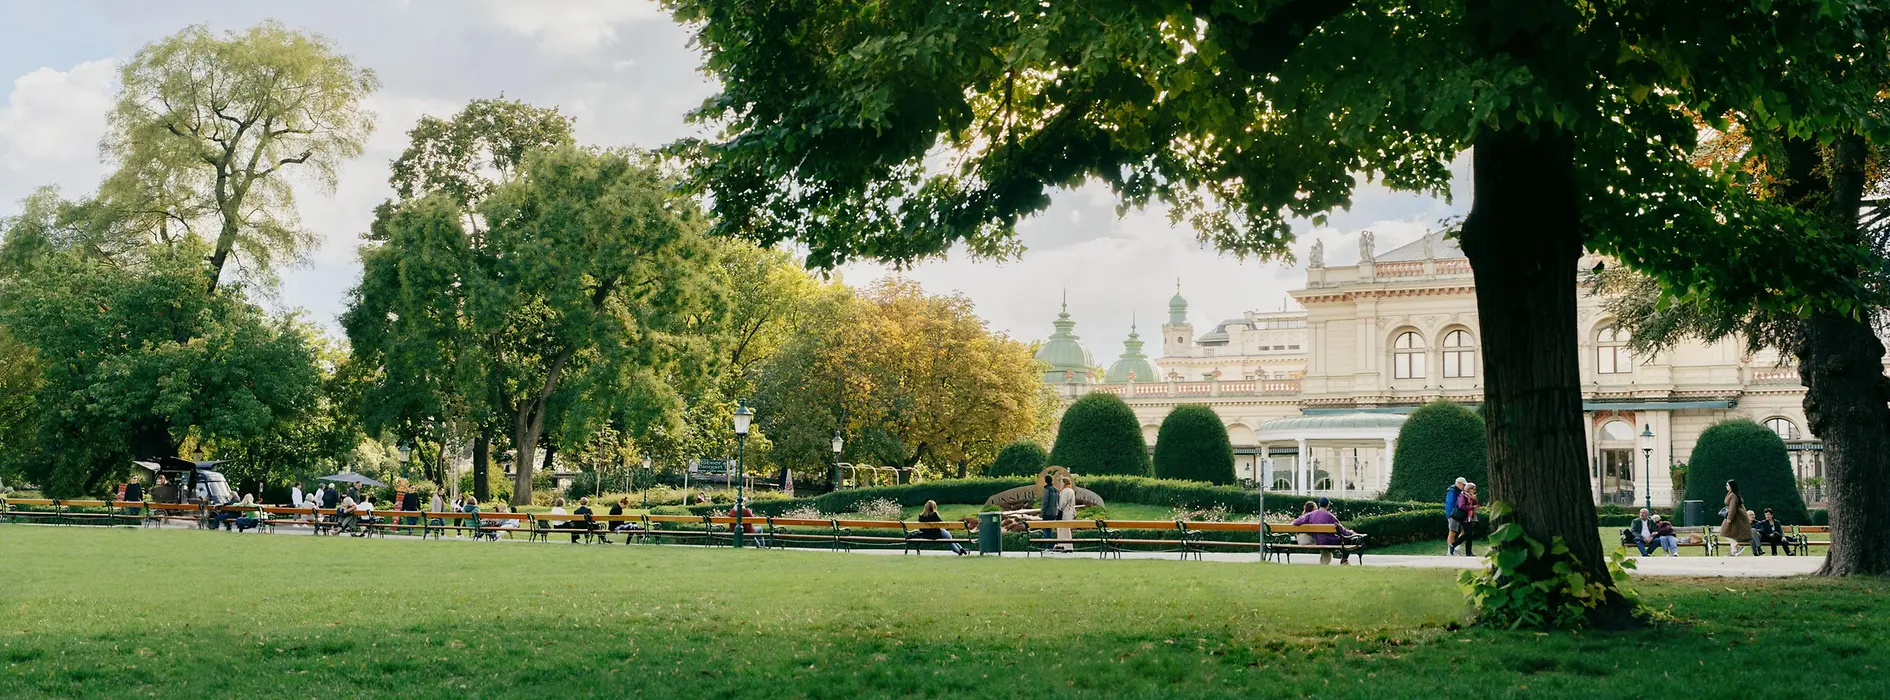 Городской парк в Вене